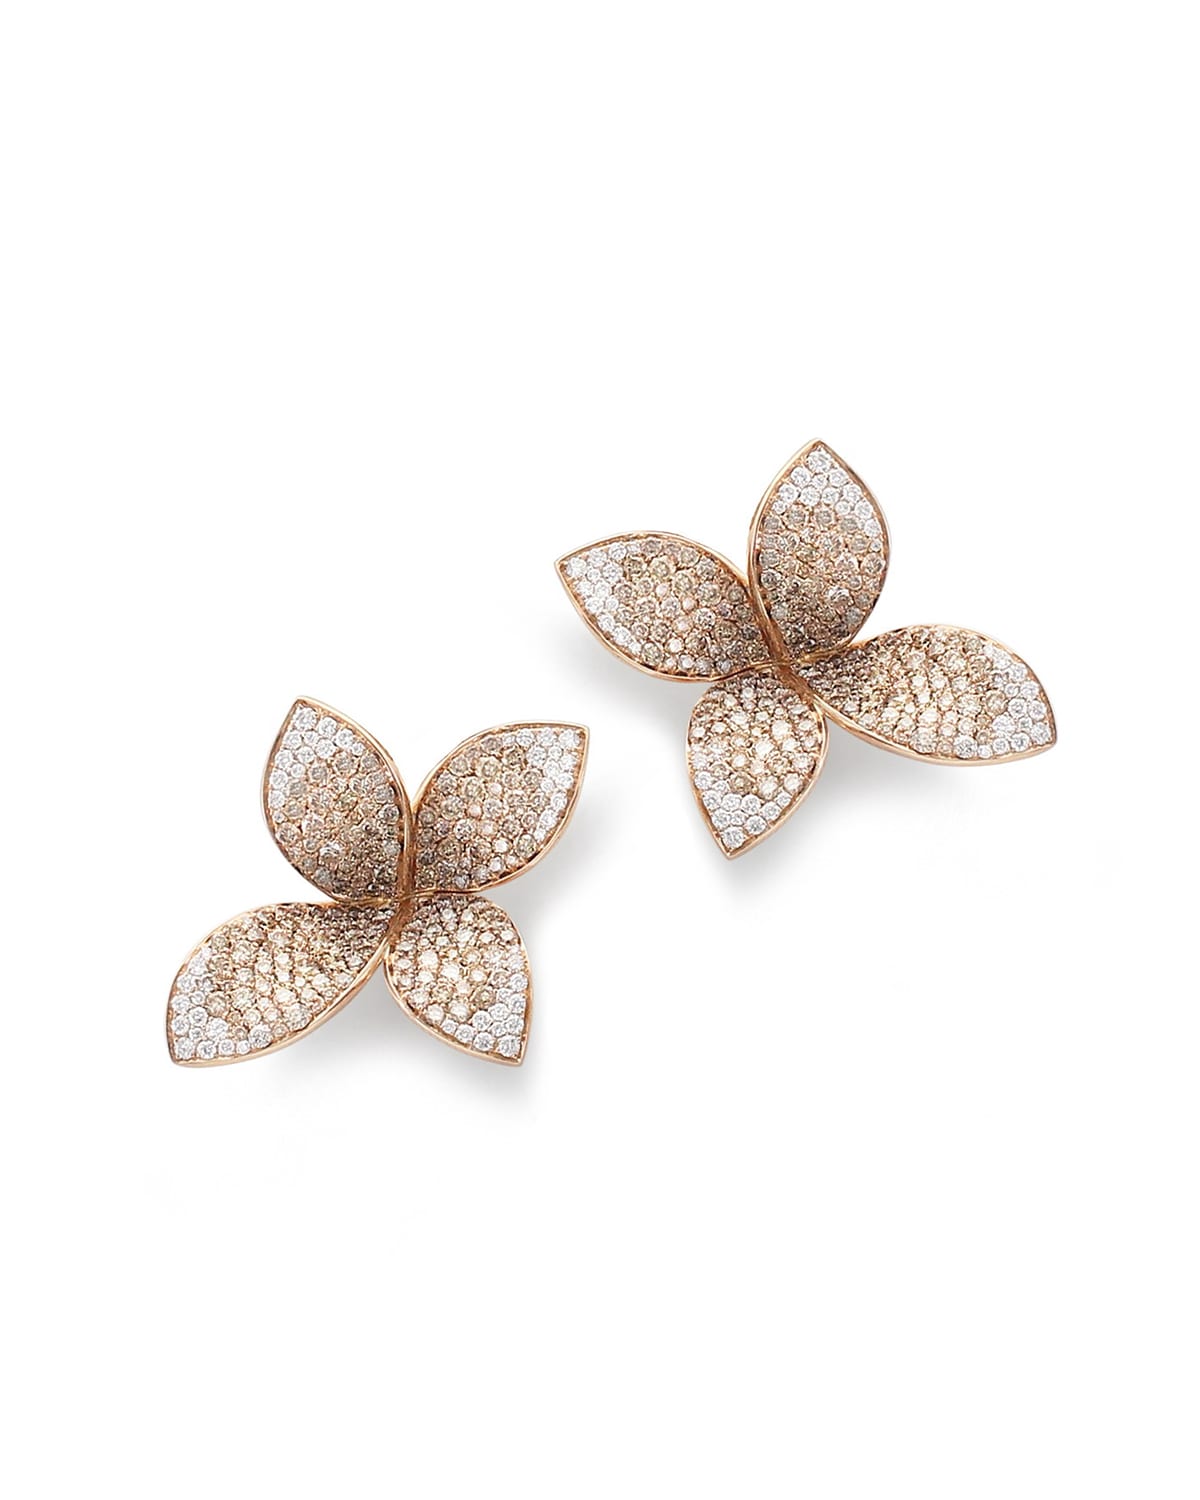 Giardini Segreti 18k Rose Gold Diamond 8-Petal Earrings